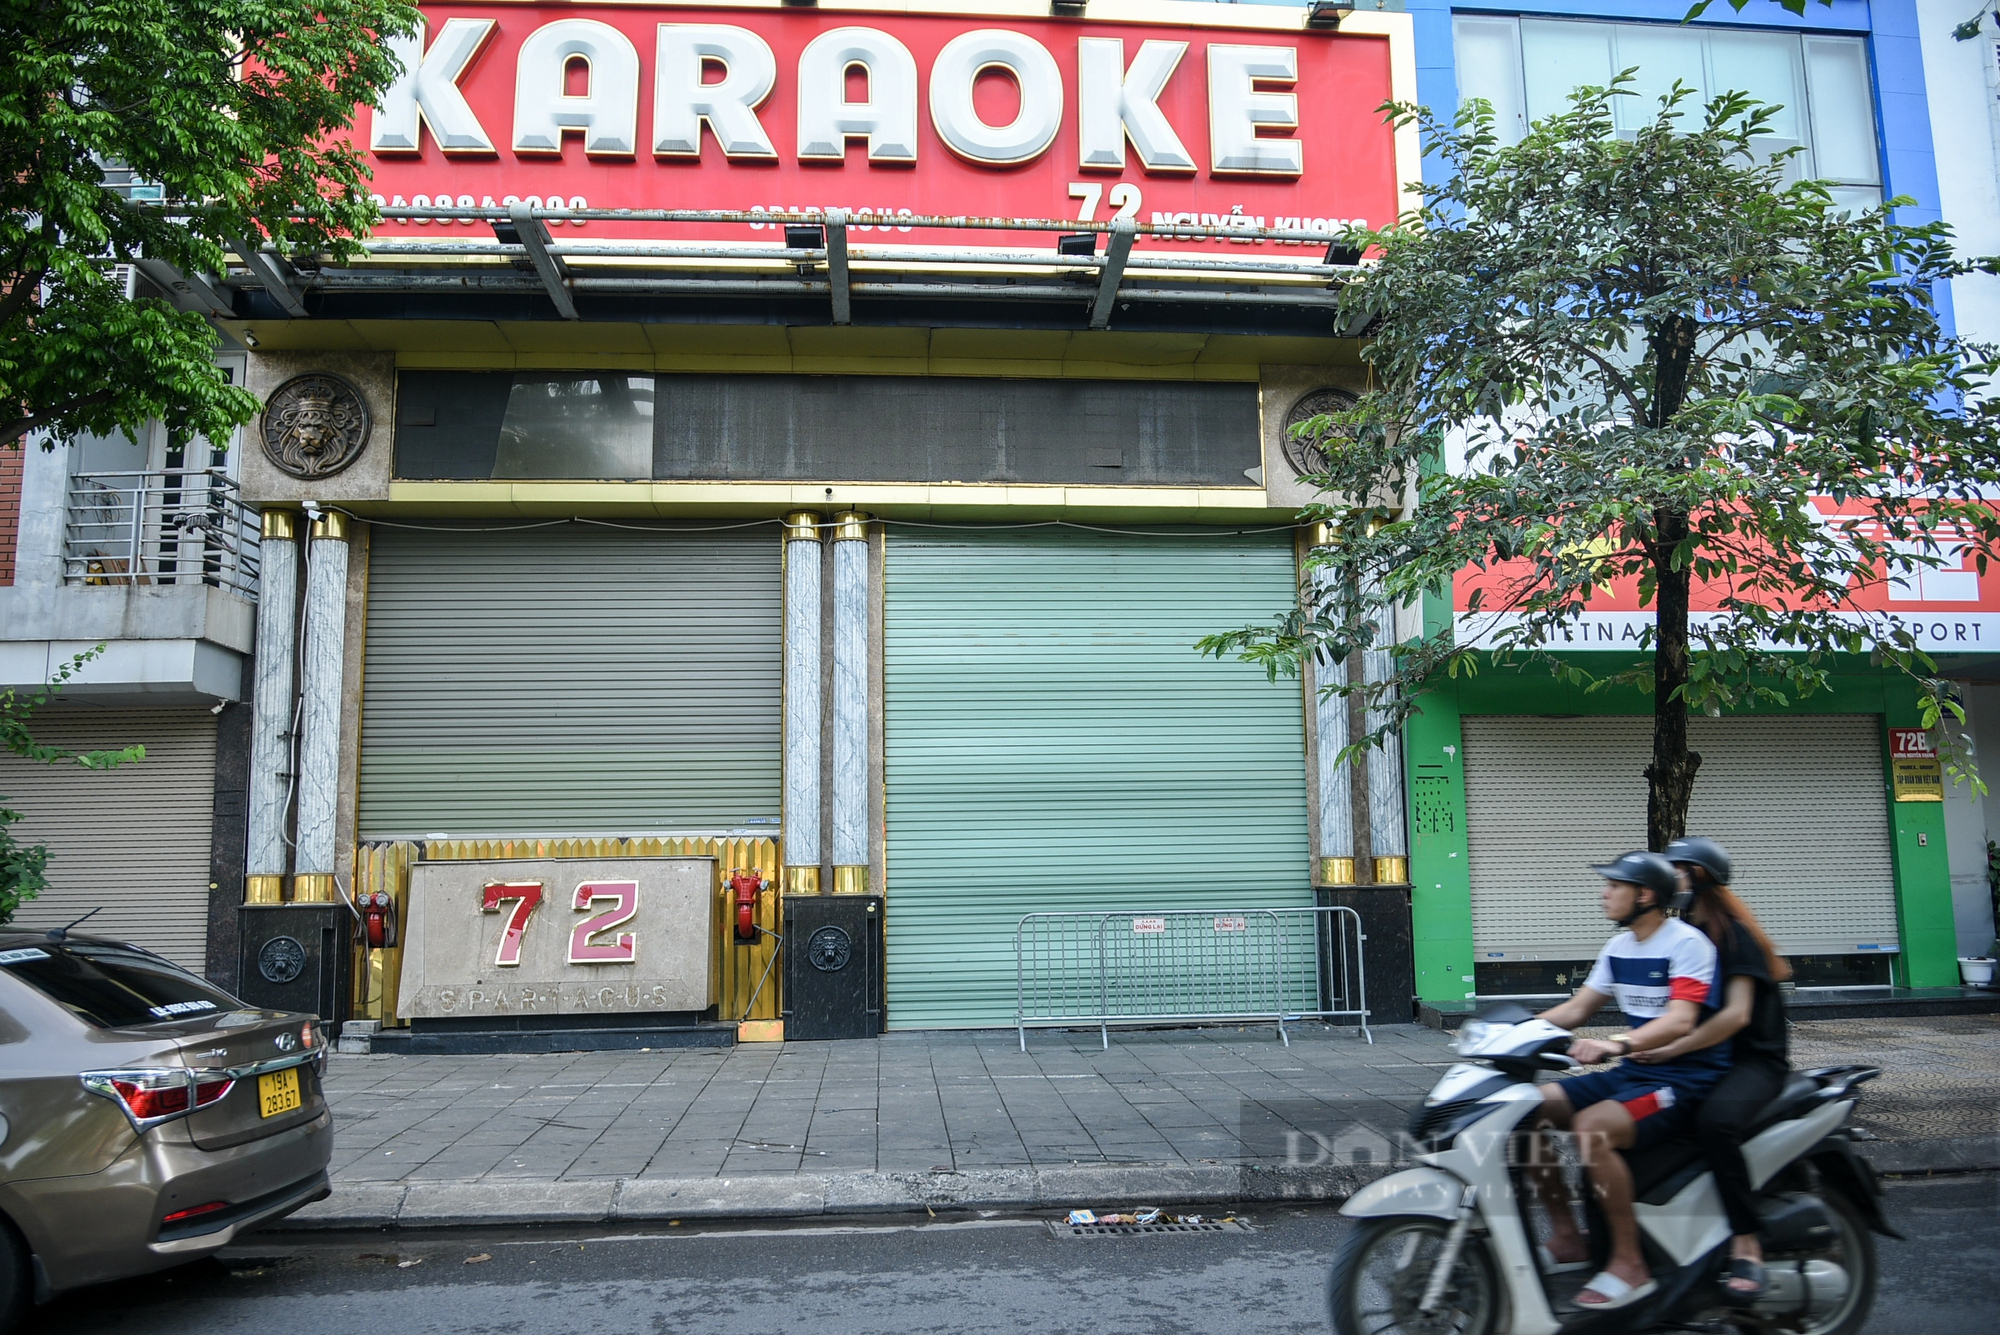 Sau hàng loạt vụ cháy, nhiều quán karaoke ở Hà Nội rơi vào tình trạng ế khách - Ảnh 3.